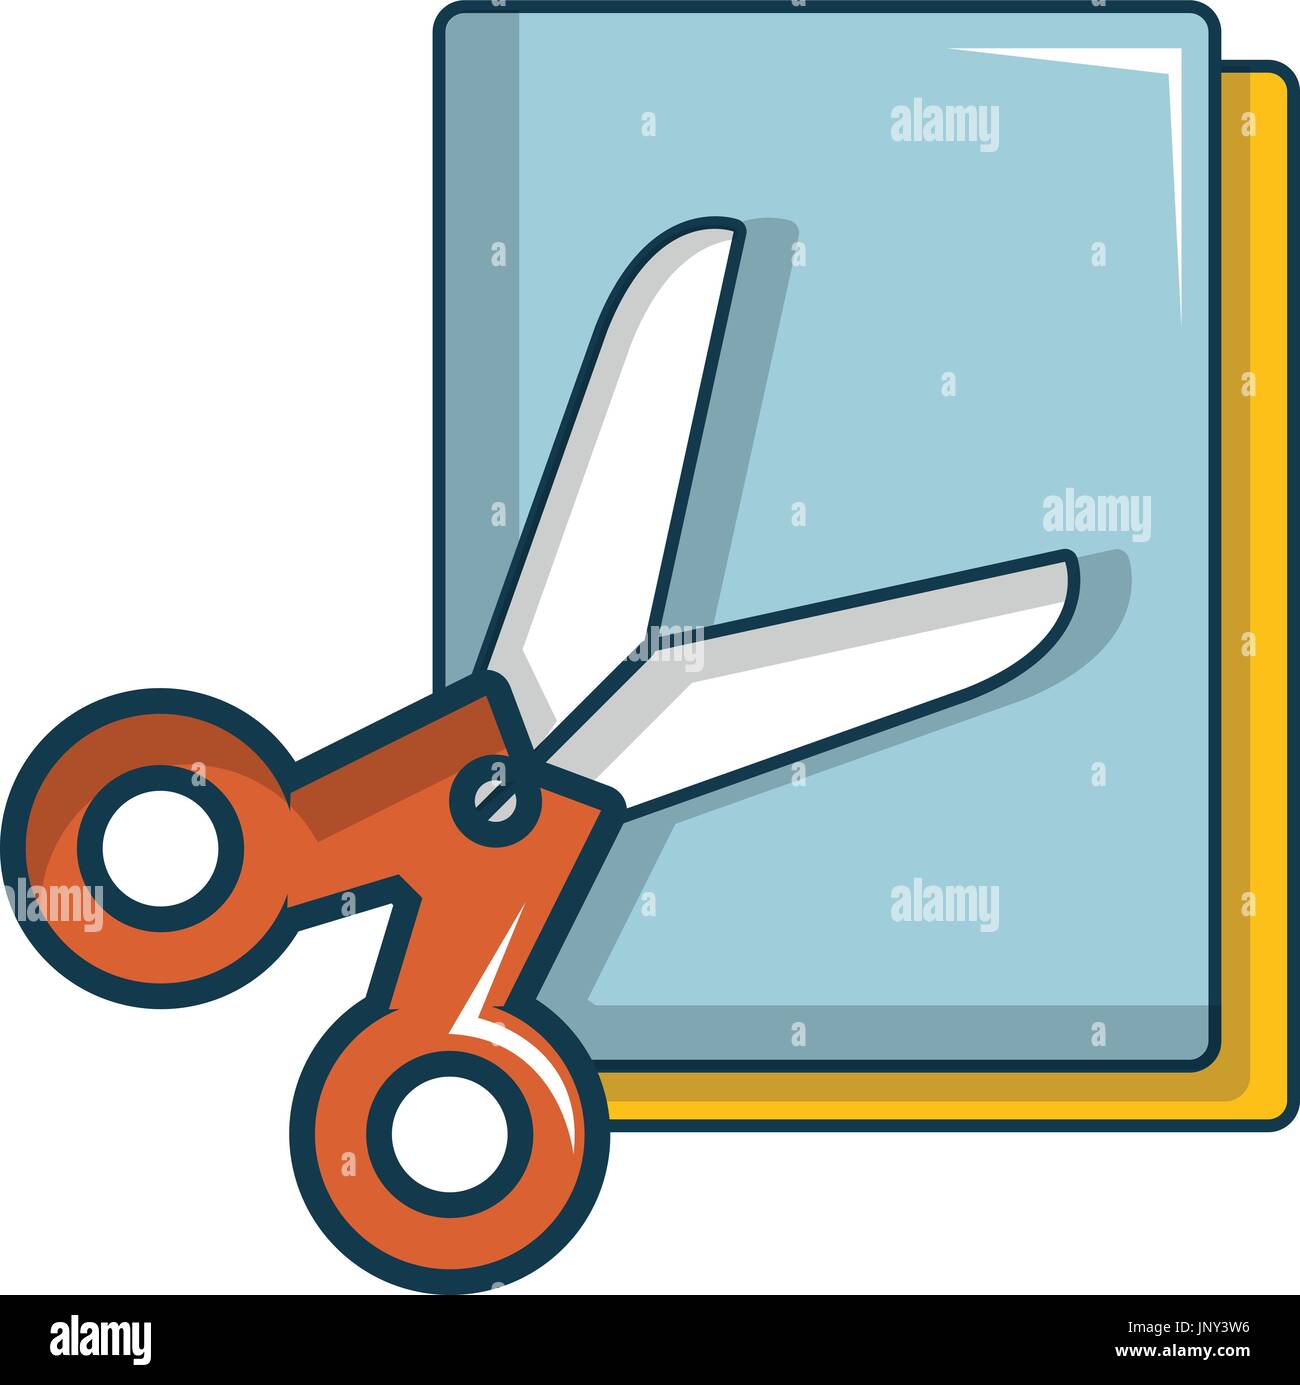 https://c8.alamy.com/comp/JNY3W6/colorful-paper-scissors-icon-cartoon-style-JNY3W6.jpg